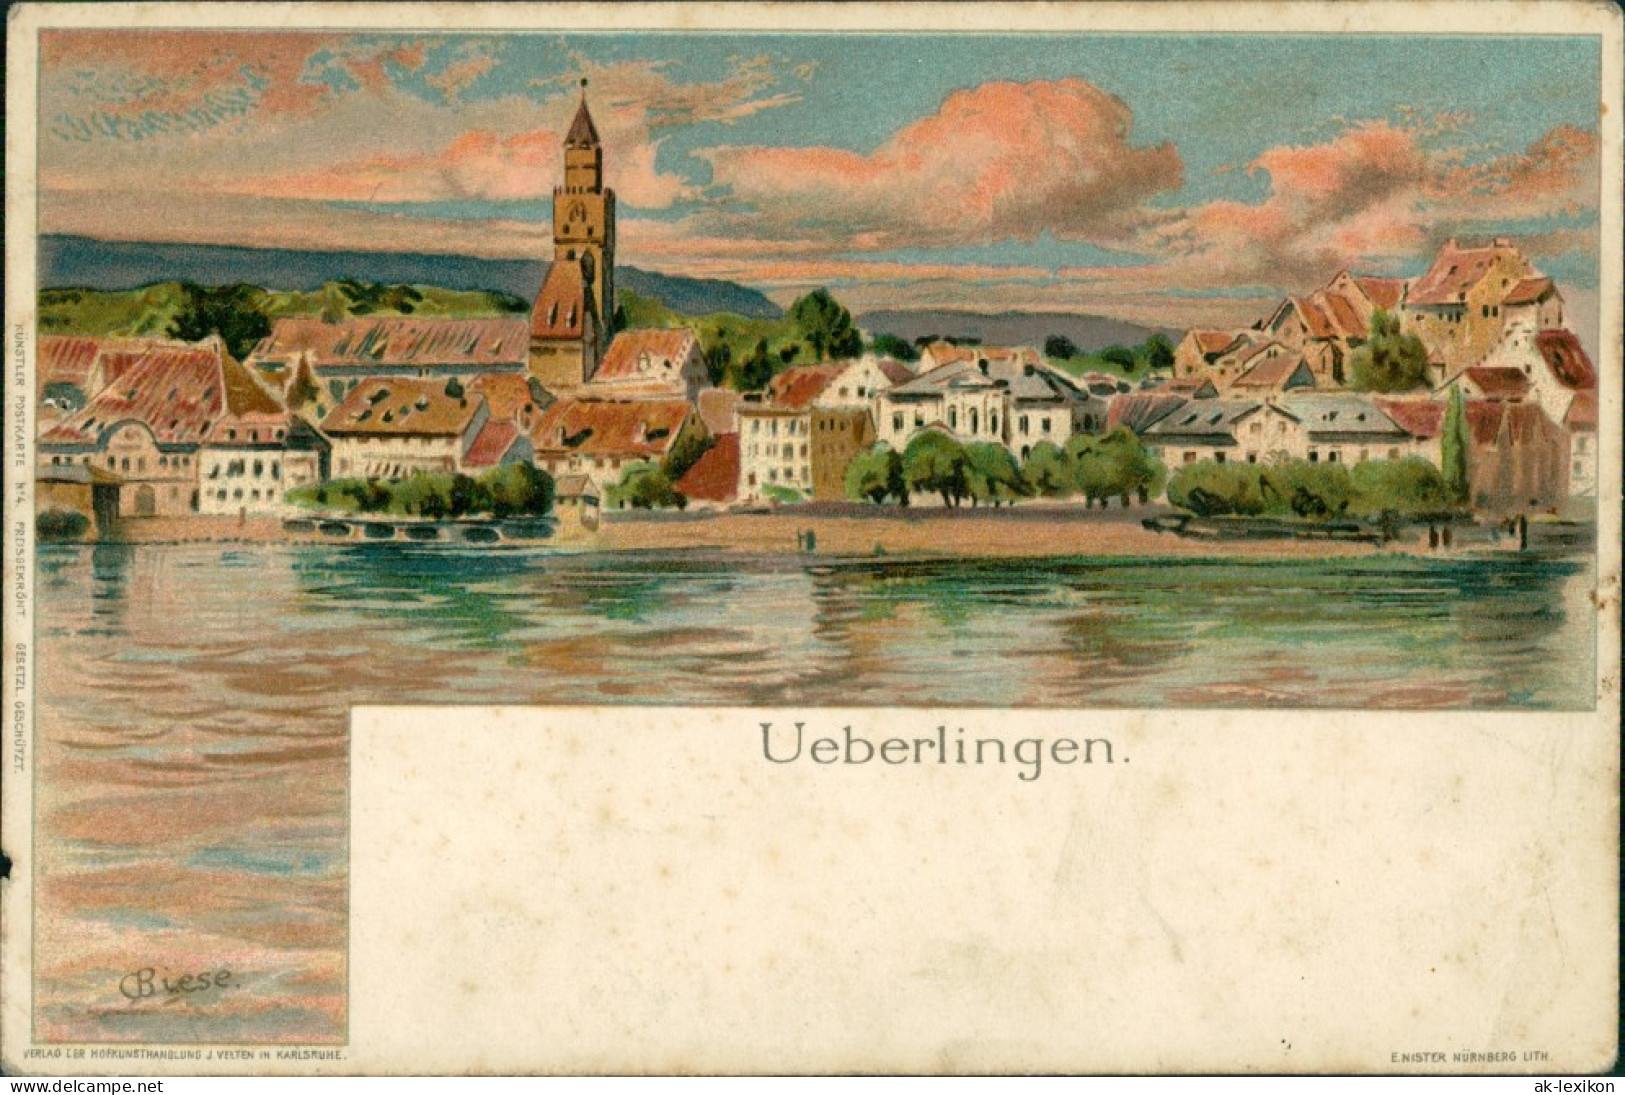 Ansichtskarte Überlingen Blick Auf Die Stadt Künstlerkarte Biese 1907 - Ueberlingen